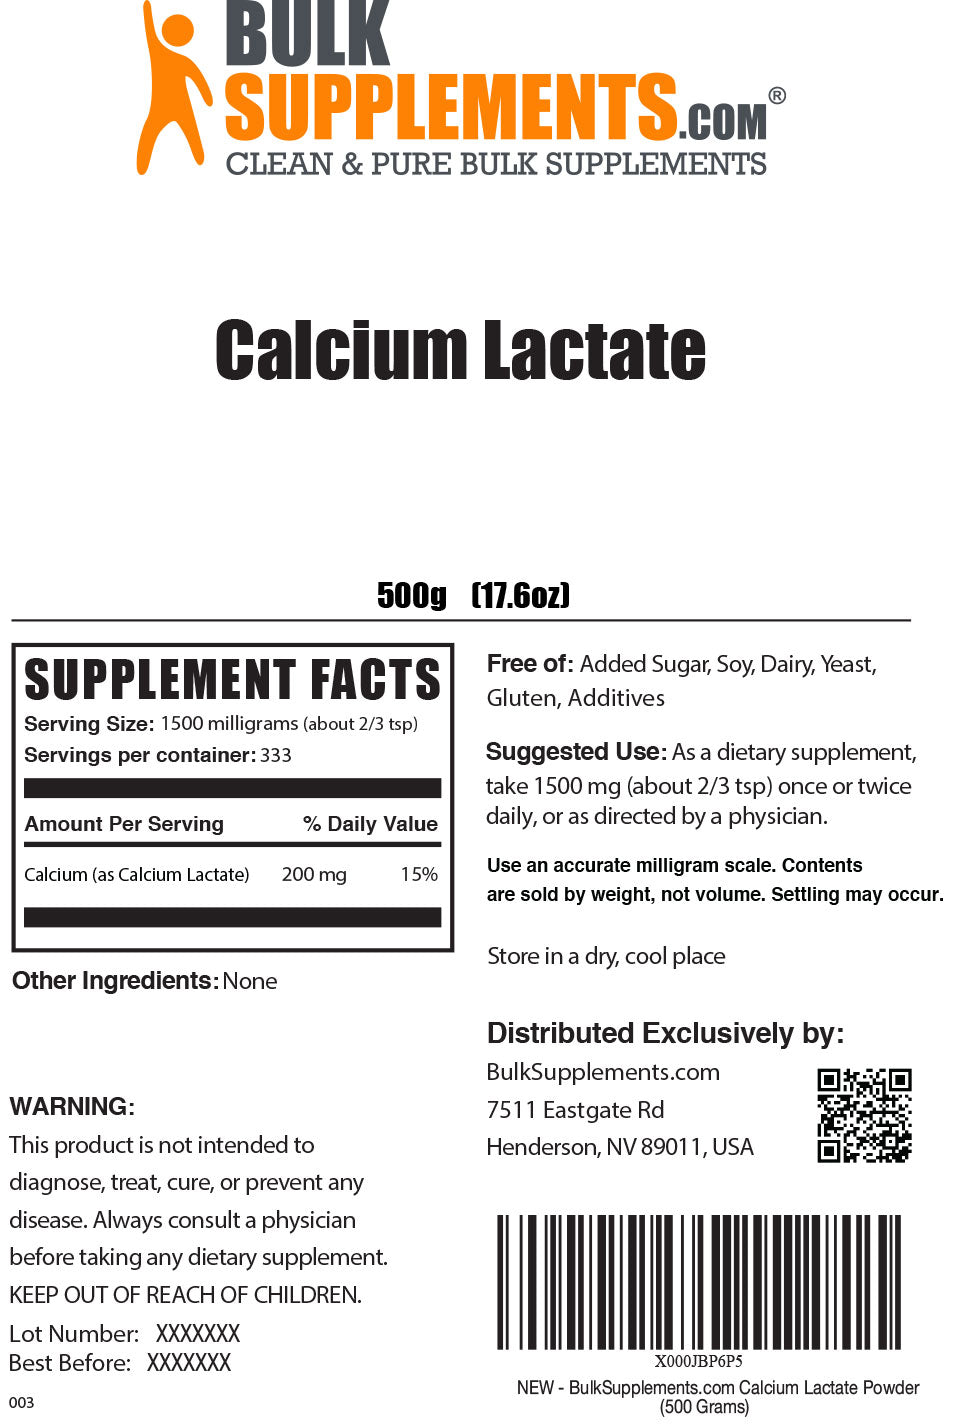 Calcium Lactate Powder Label 500g